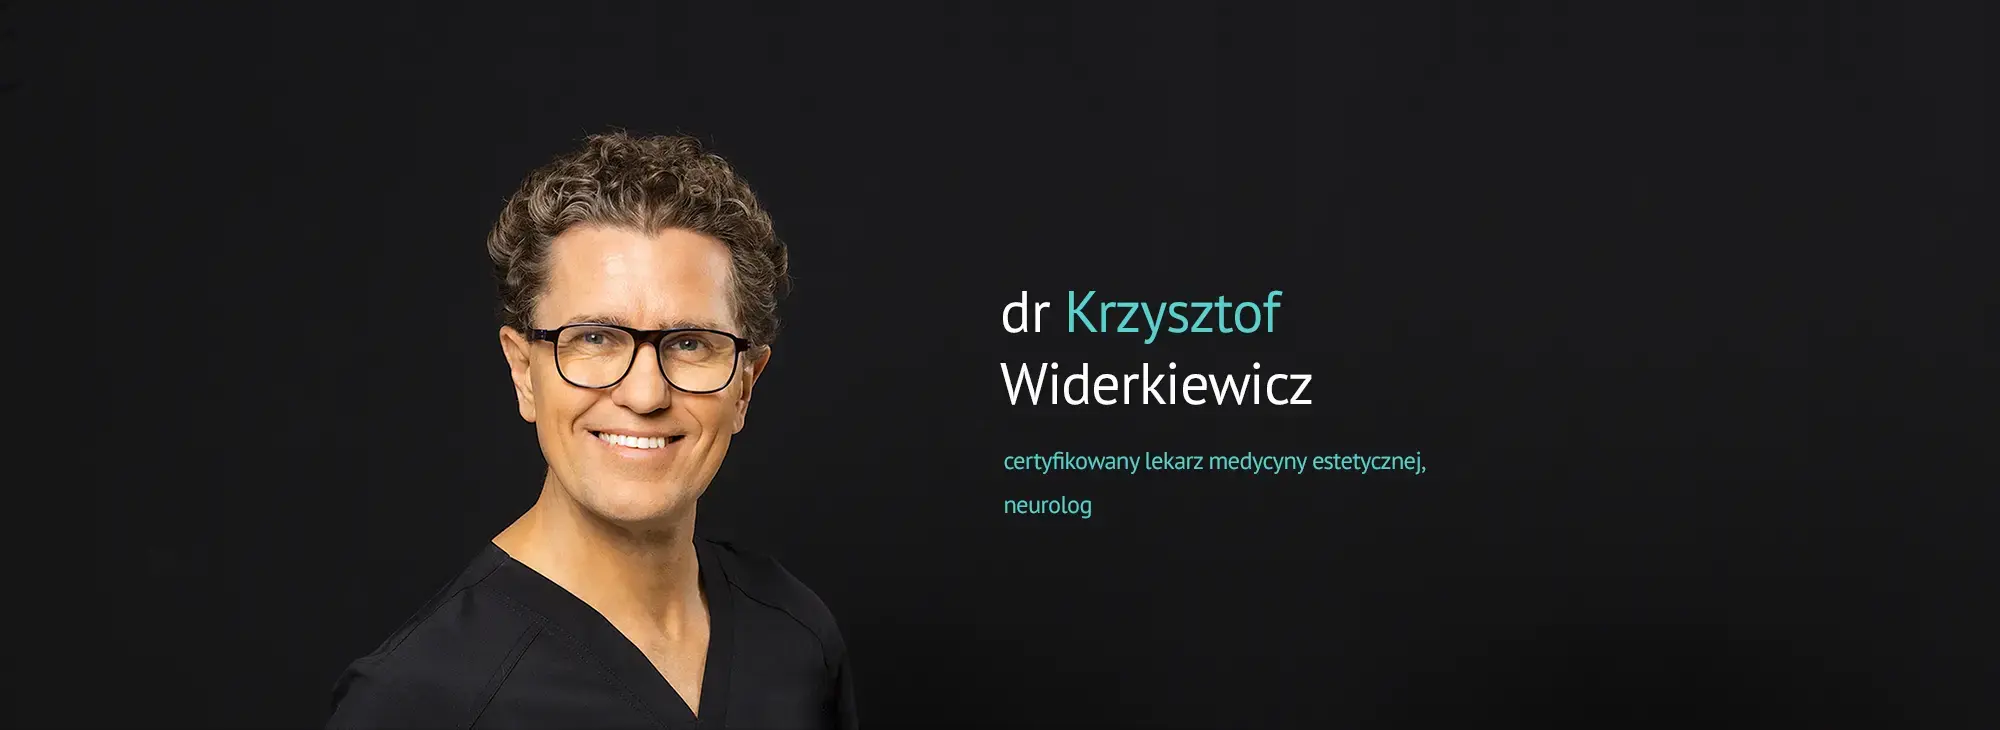 dr Krzysztof Widerkiewicz